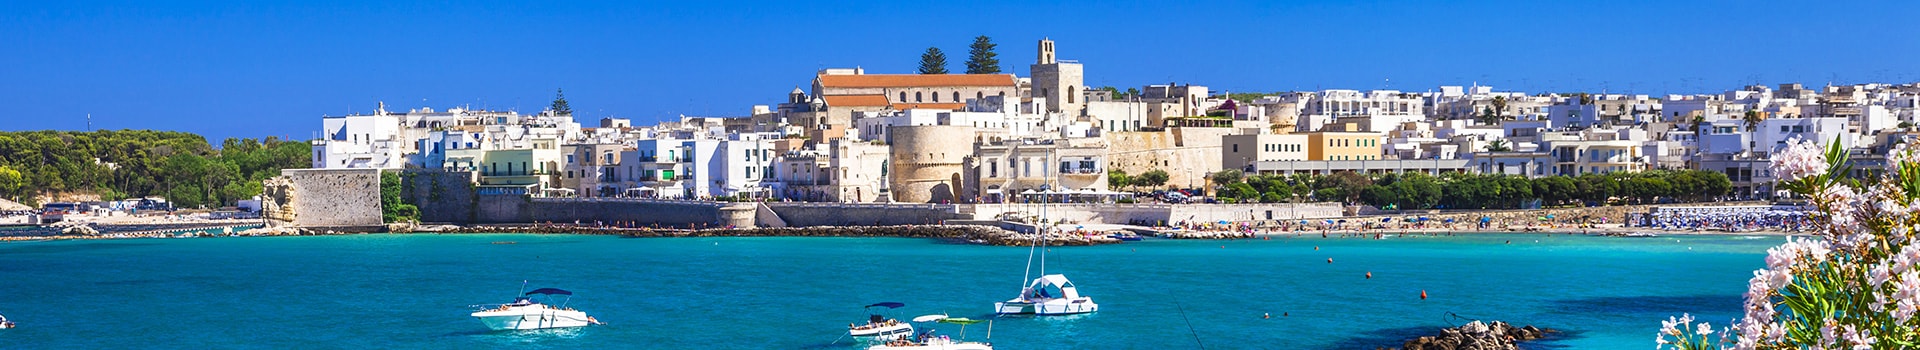 Billetes de Barco y Ferry en Región de Apulia